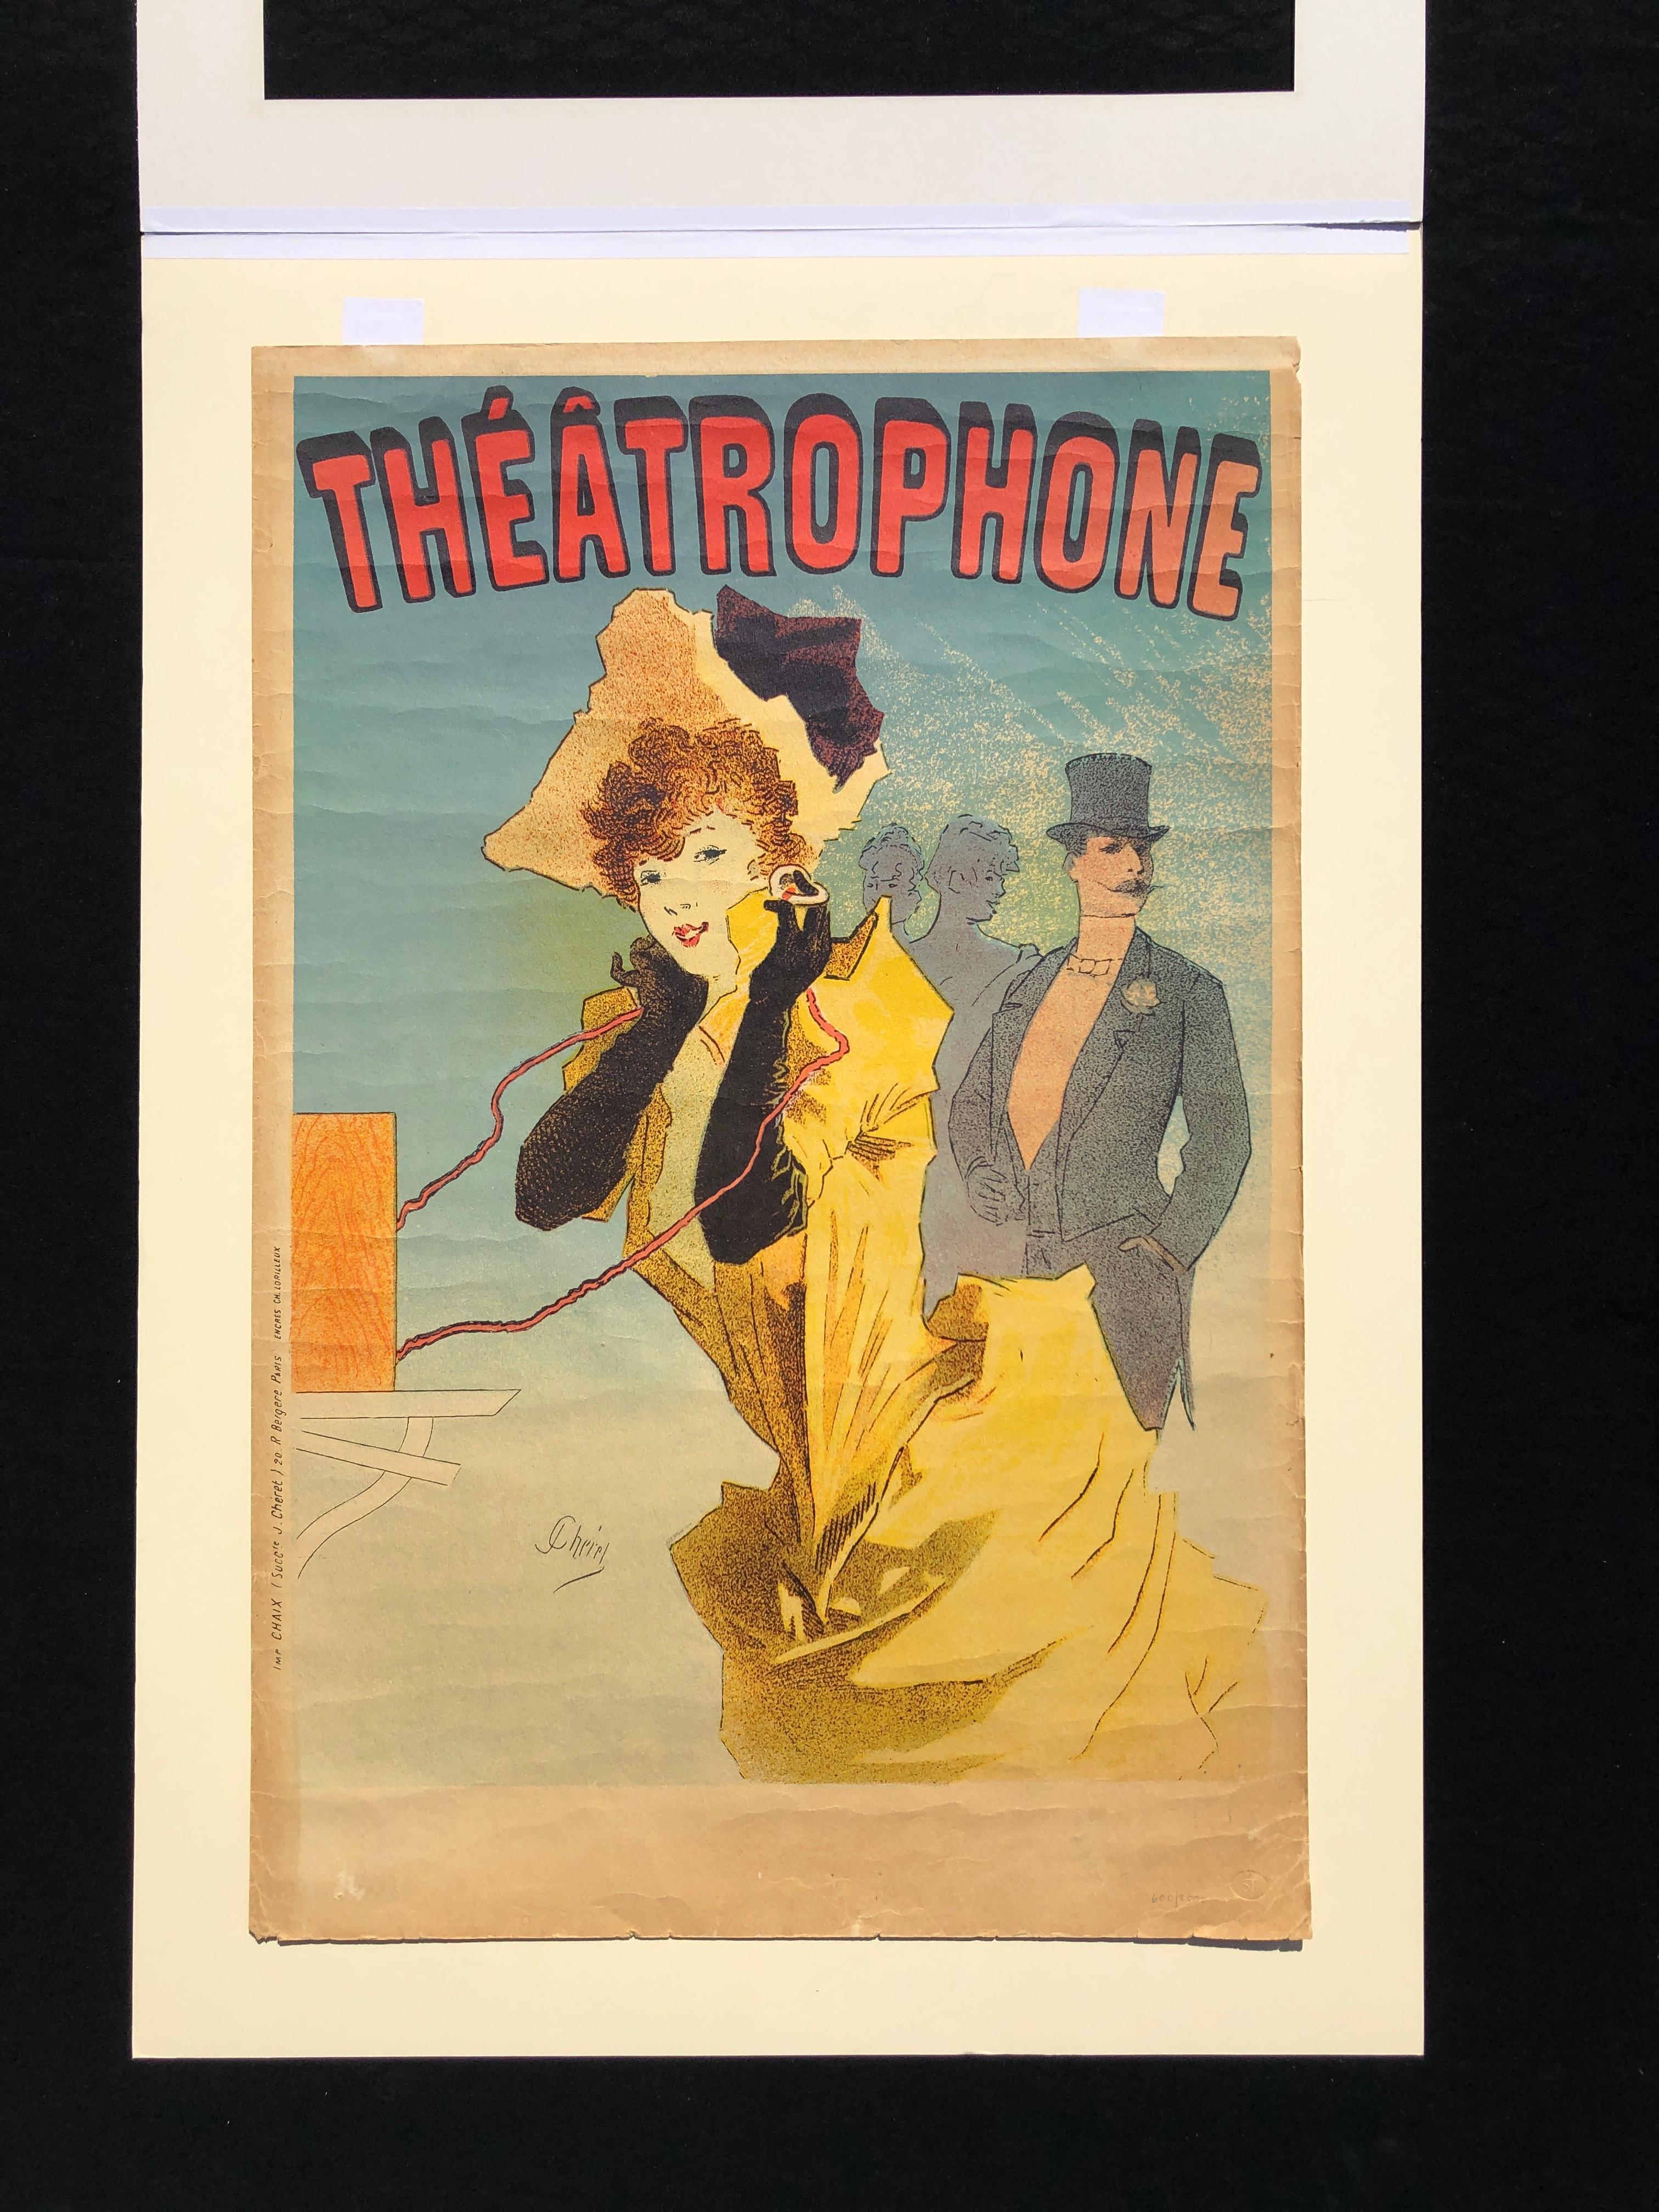 Français Le Théâtrophone - Vintage Art Nouveau Lithograph Poster by Jules Cheret en vente